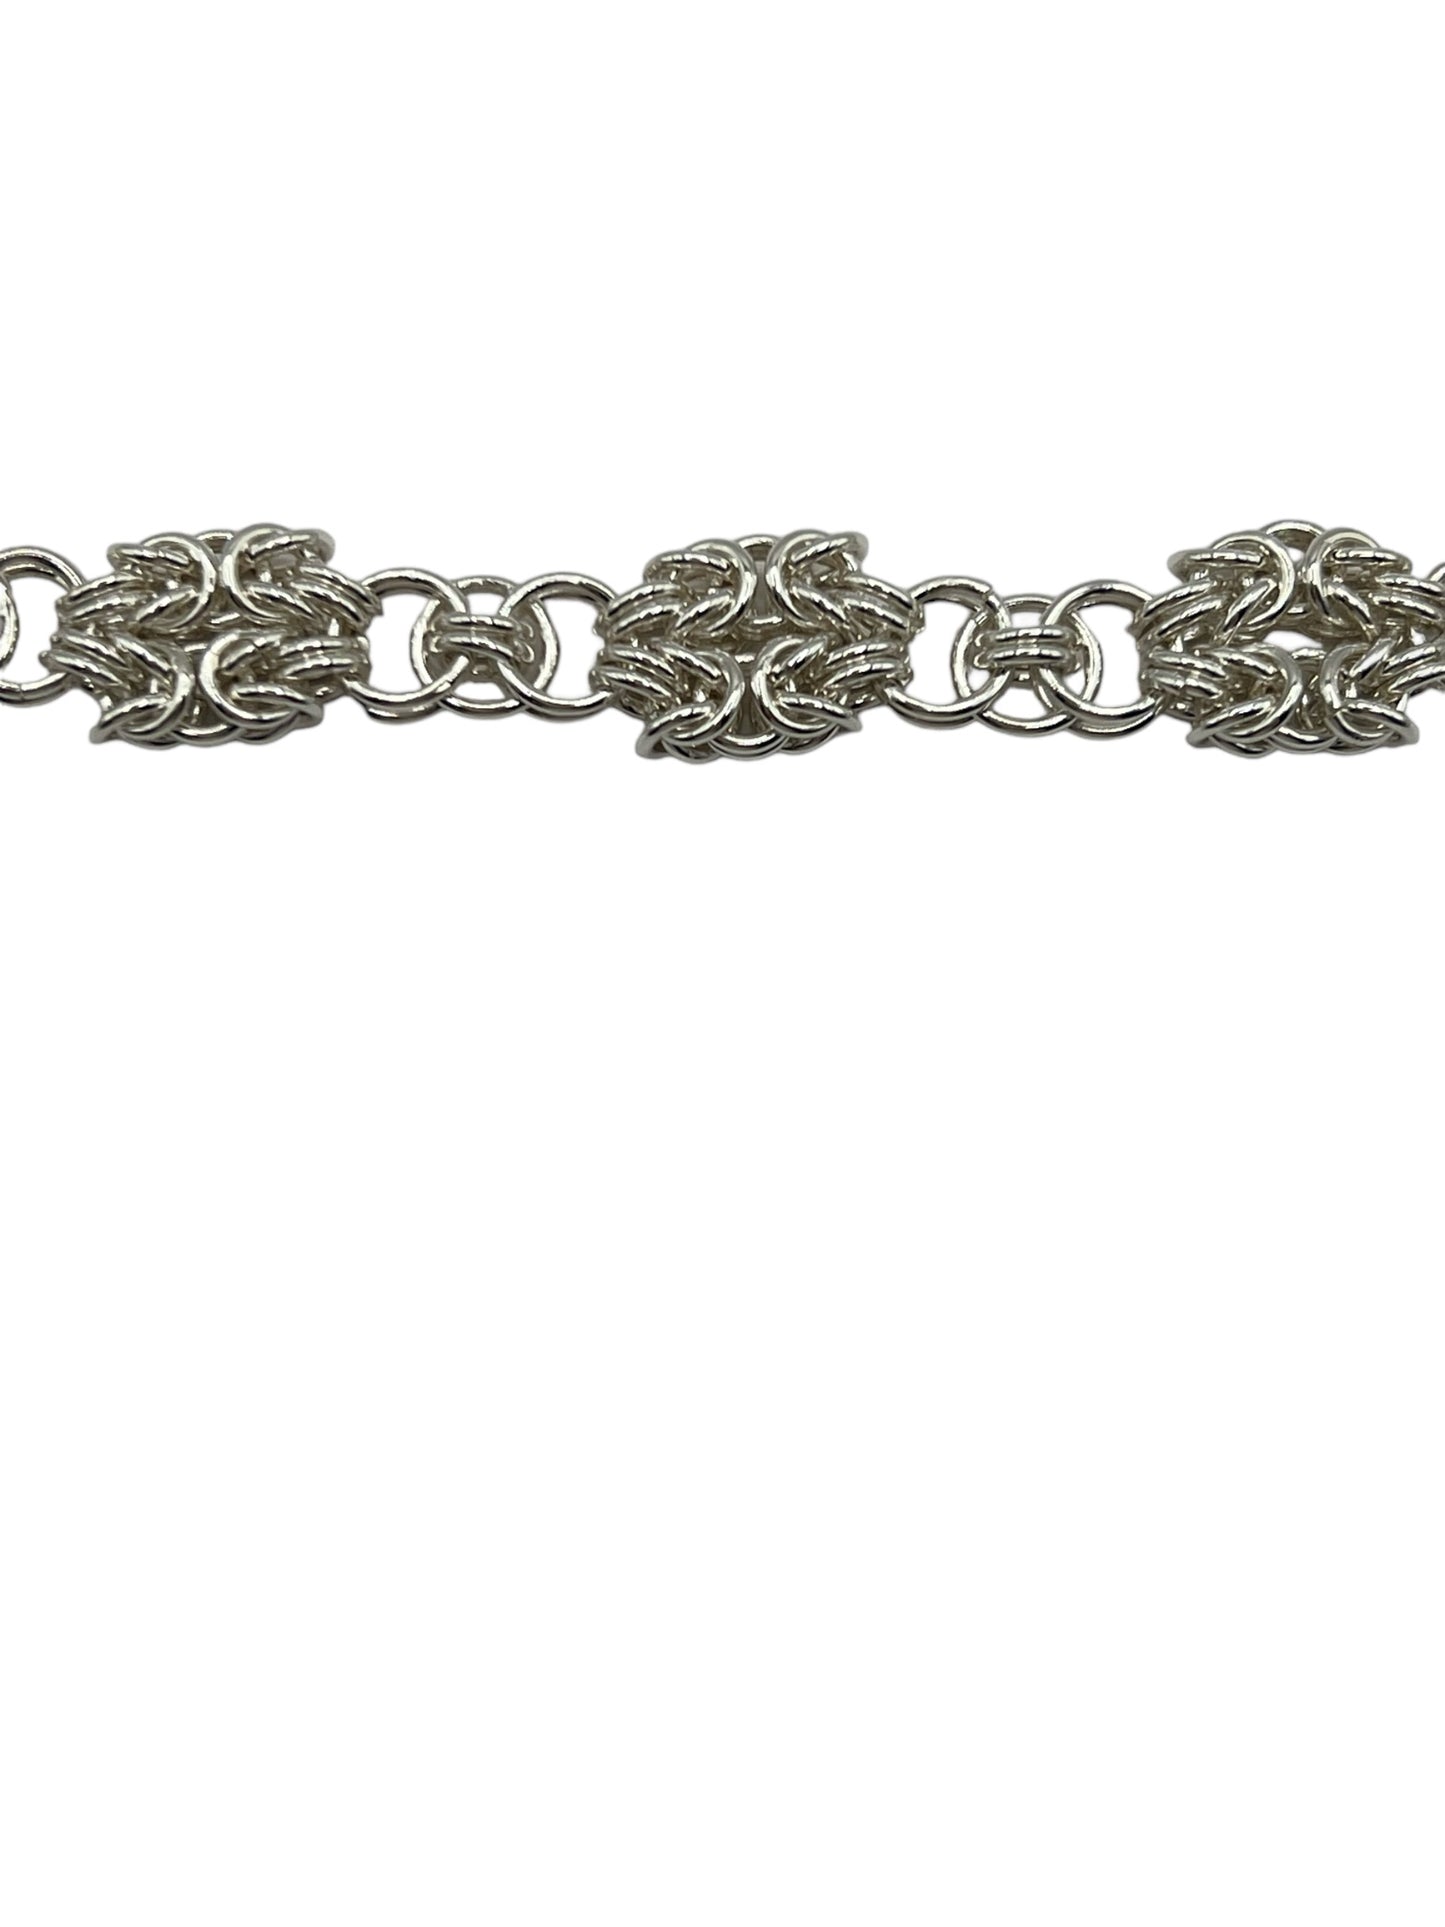 Double Byzantine Celtic Sterling Silver Necklace